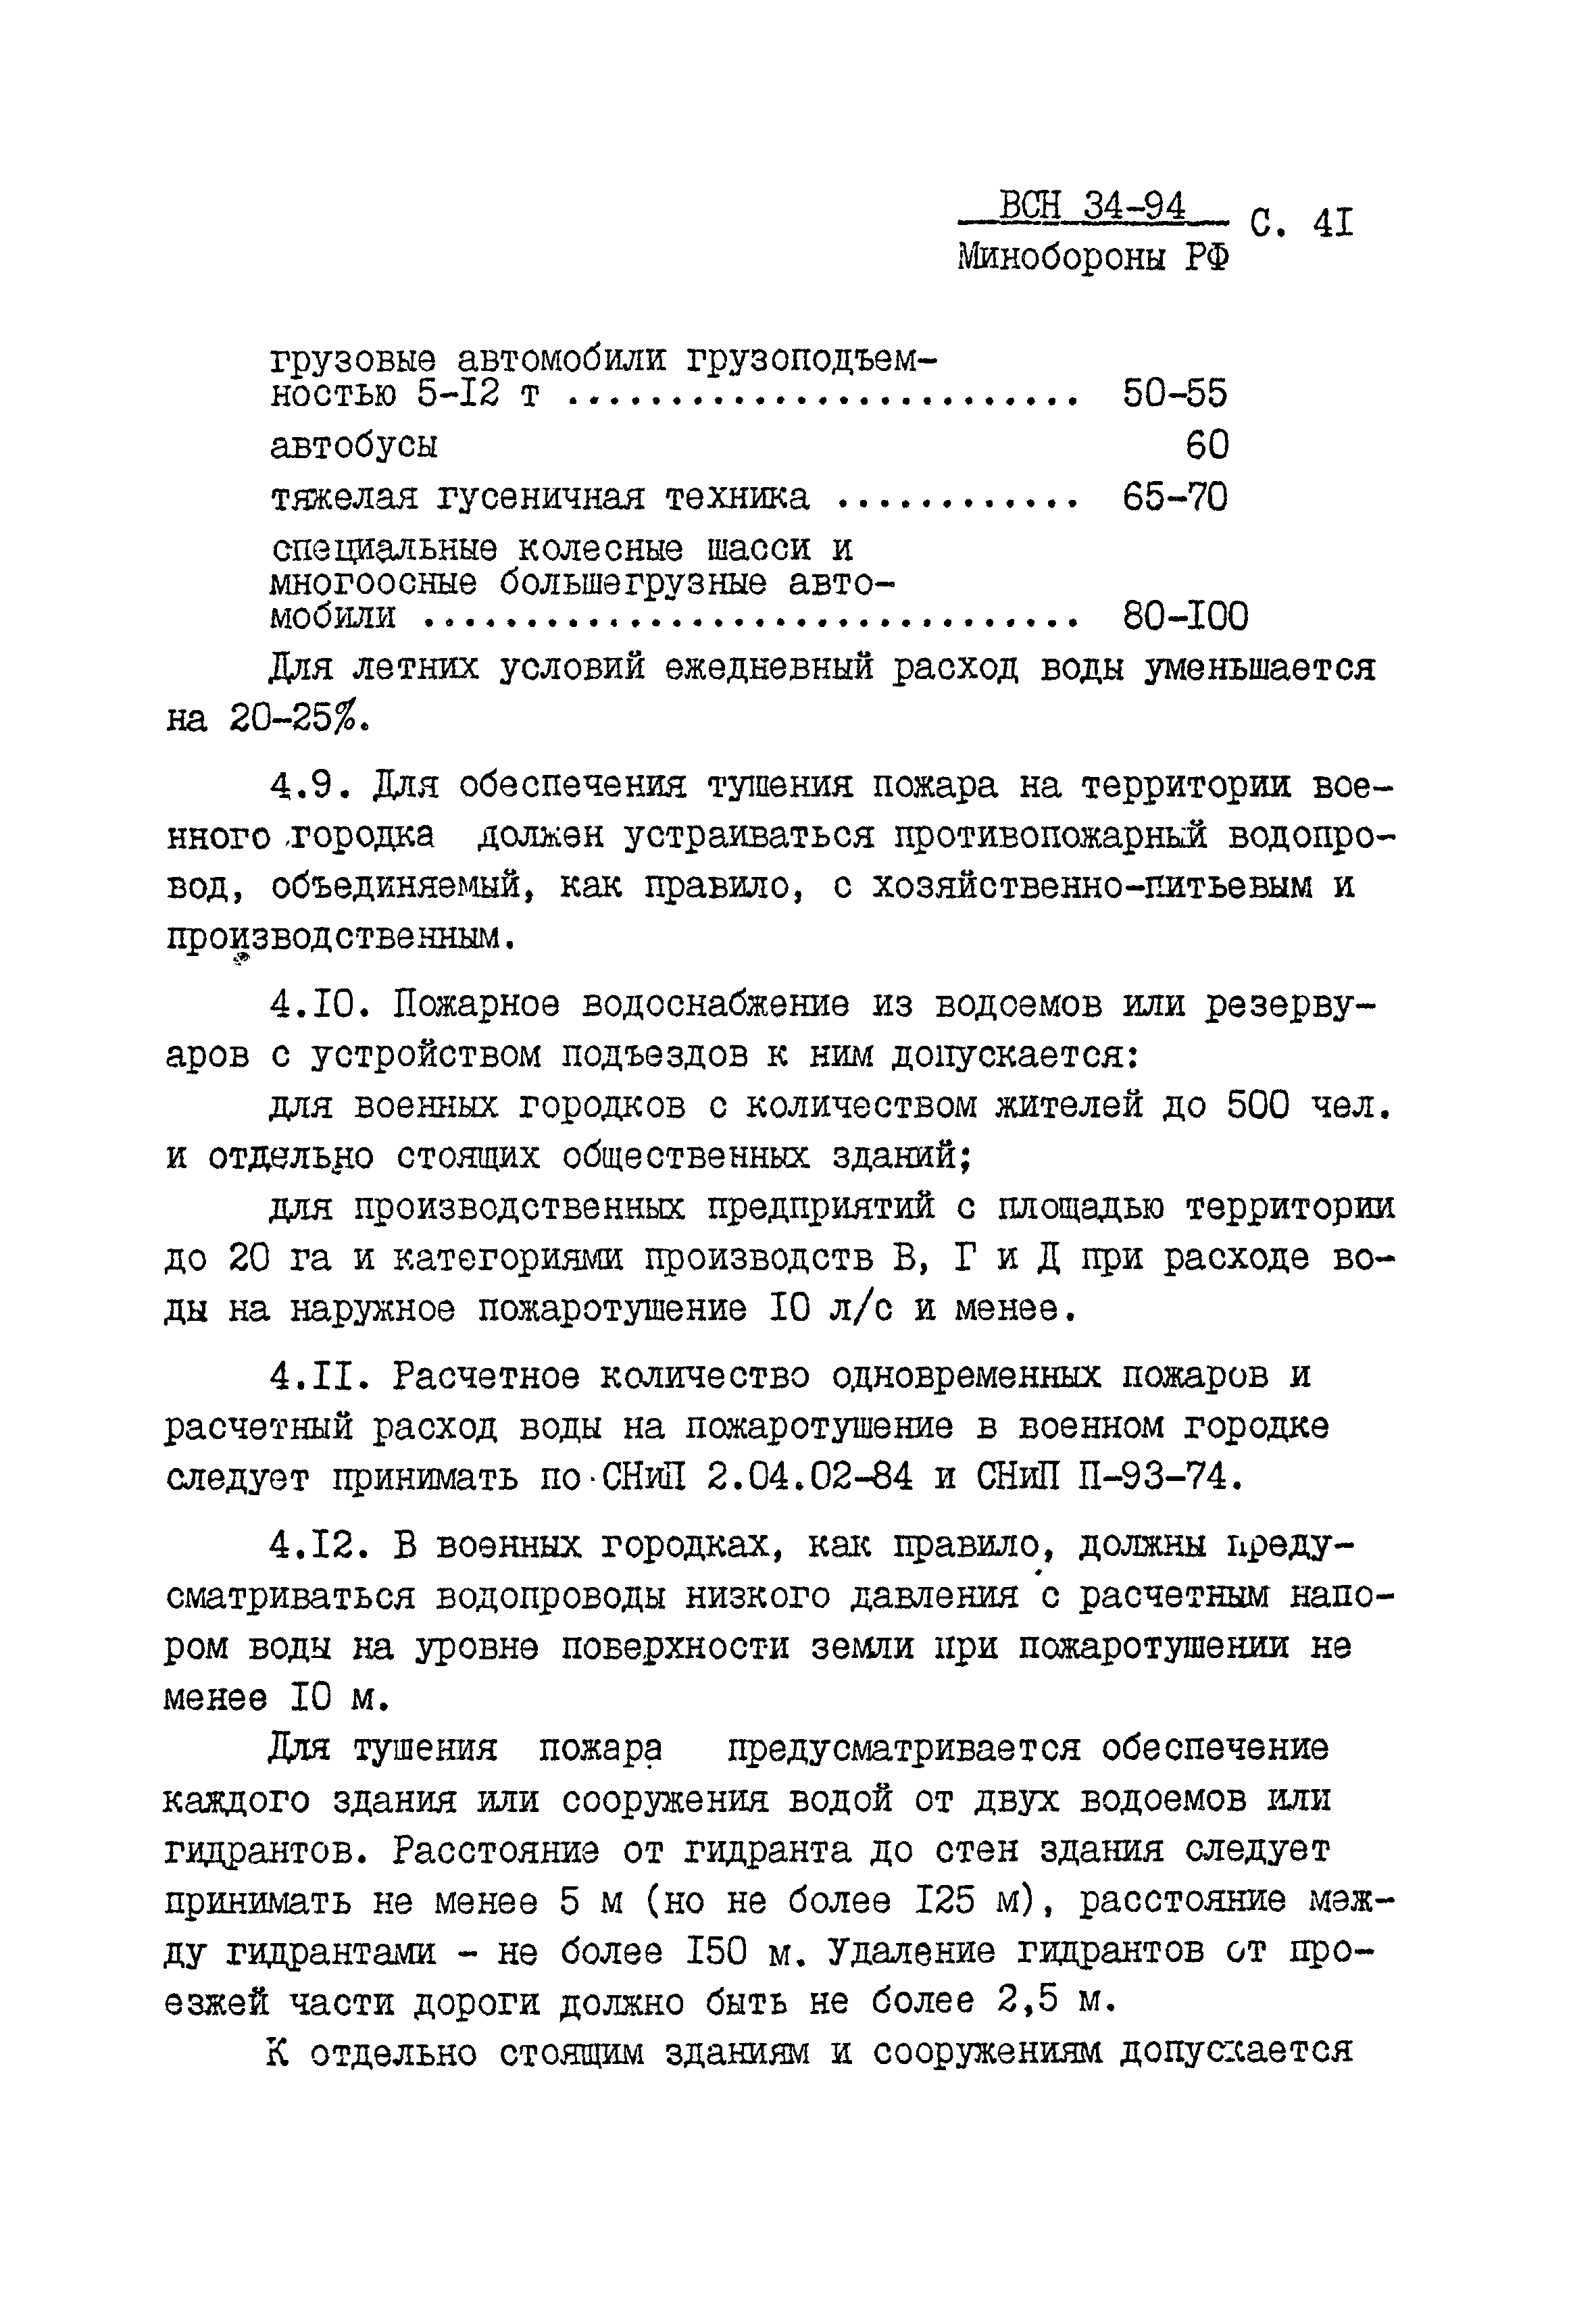 ВСН 34-94 МО РФ